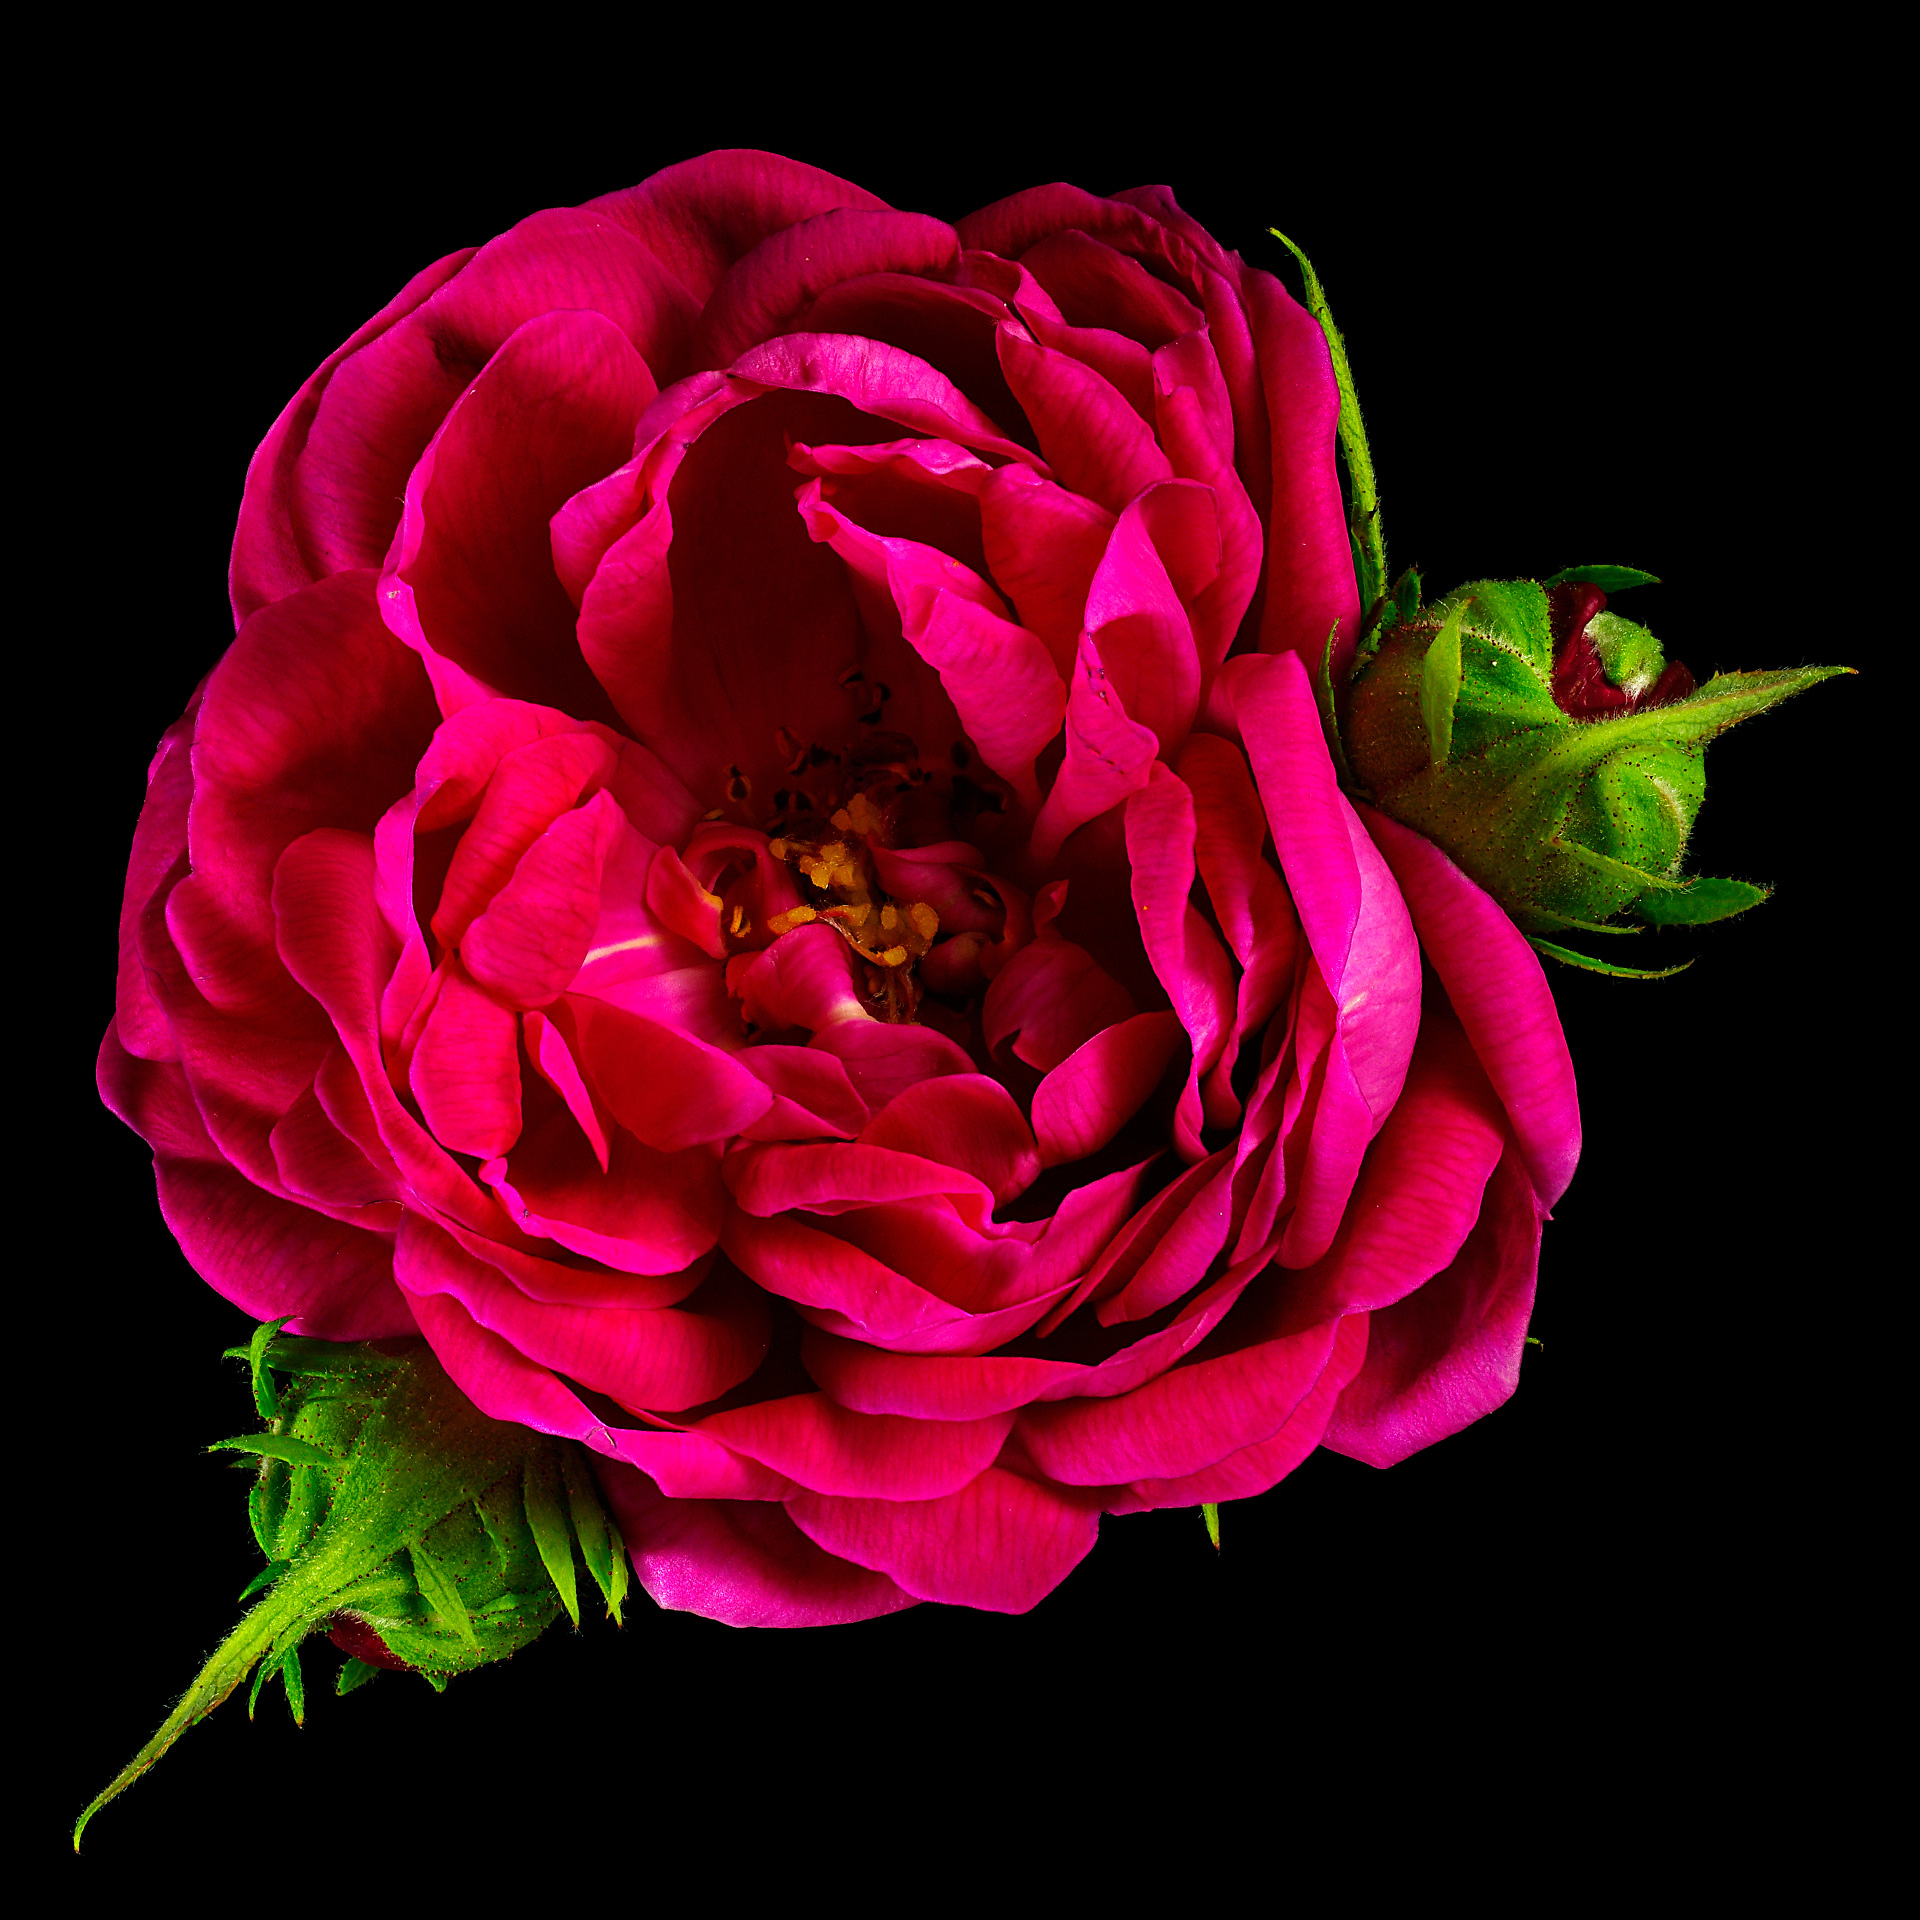 Damask rose: Rosa x damascena ‘Rose de Resht’